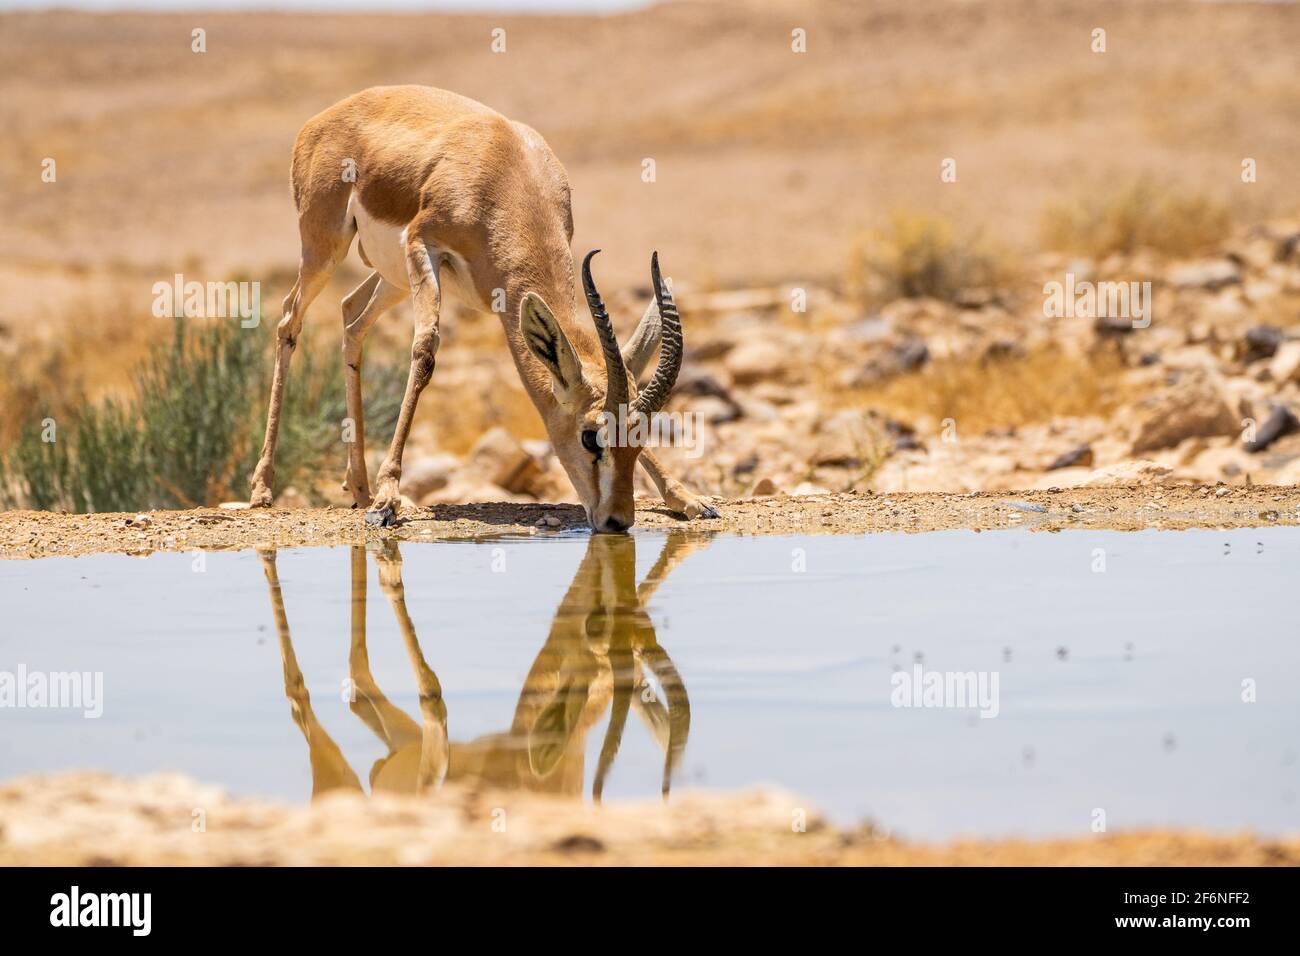 La gazelle dorcas (Gazella dorcas), également connu sous le nom de gazelle, Ariel est une petite commune et gazelle. La gazelle dorcas tient environ 55 à 65 cm à la s Banque D'Images